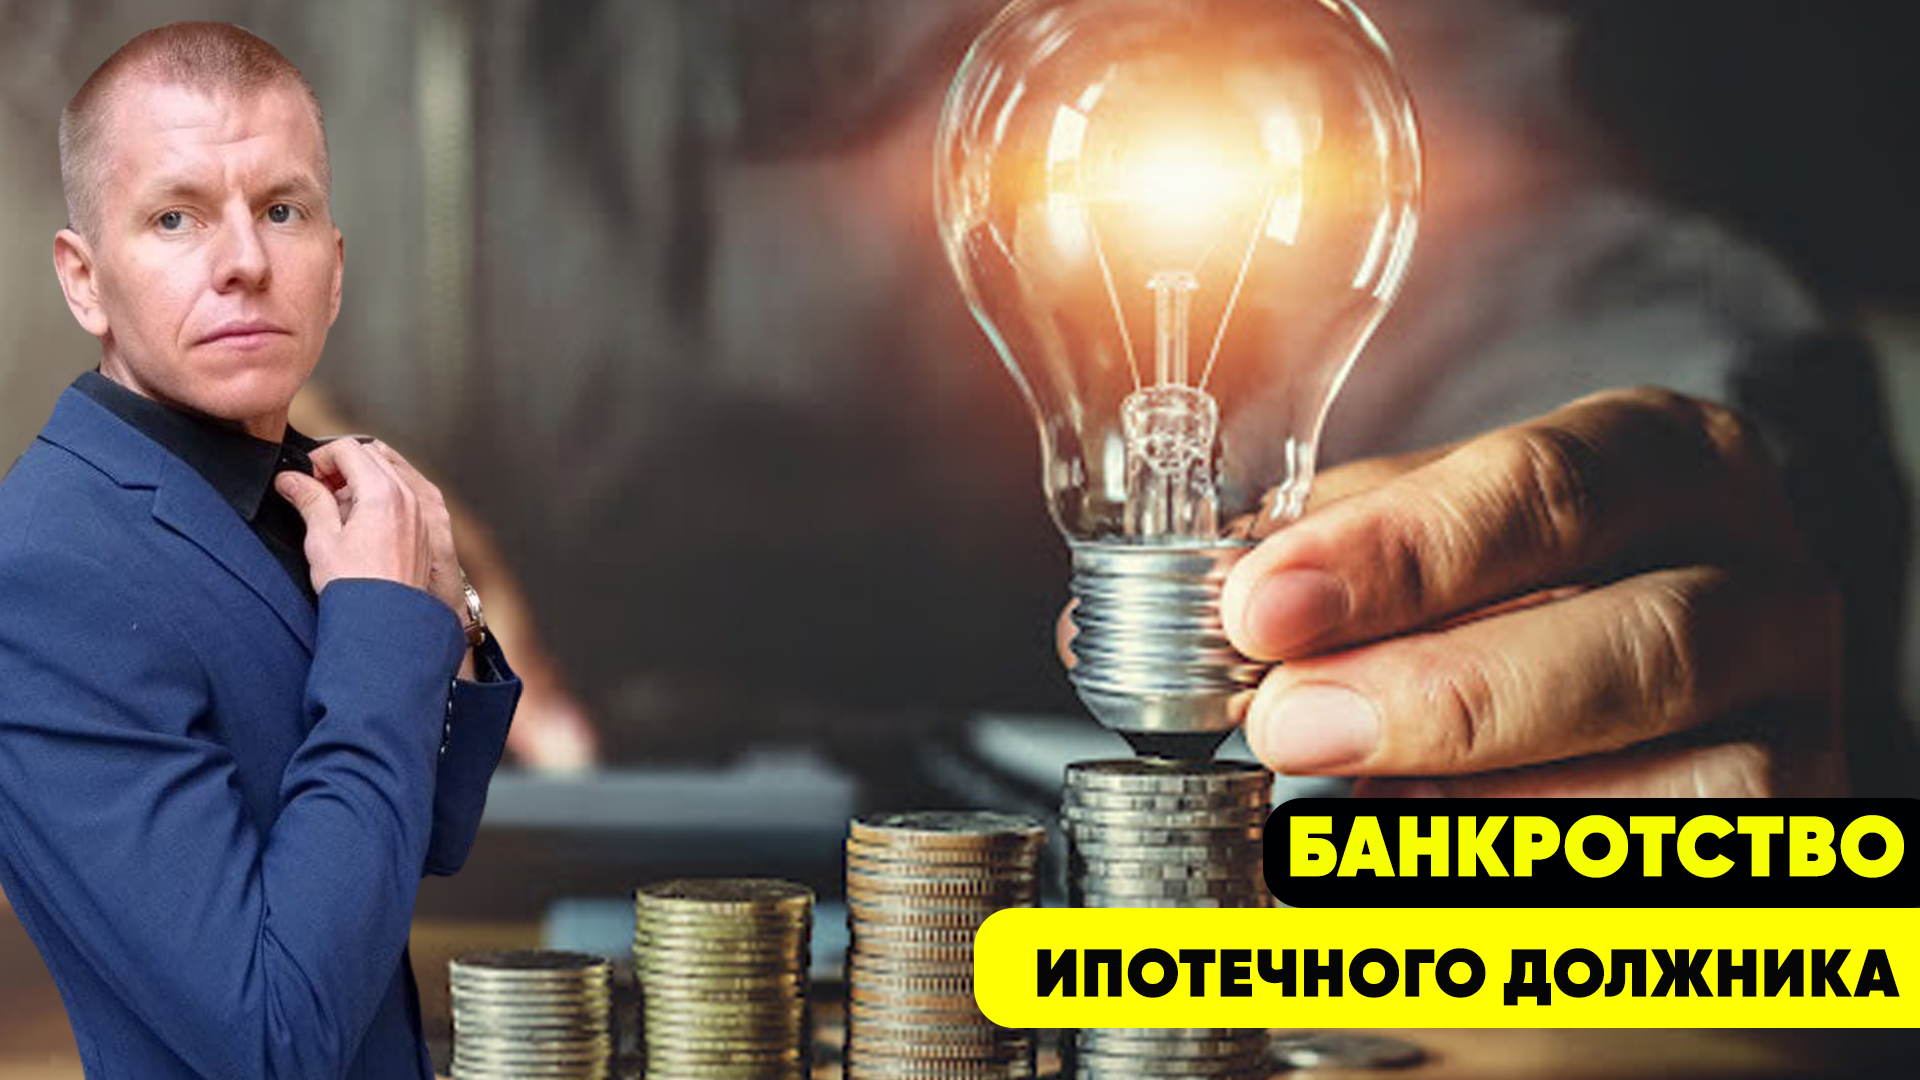  Банкротство физического лица ипотечного должника | Реструктуризация долга #адвокатвасильев